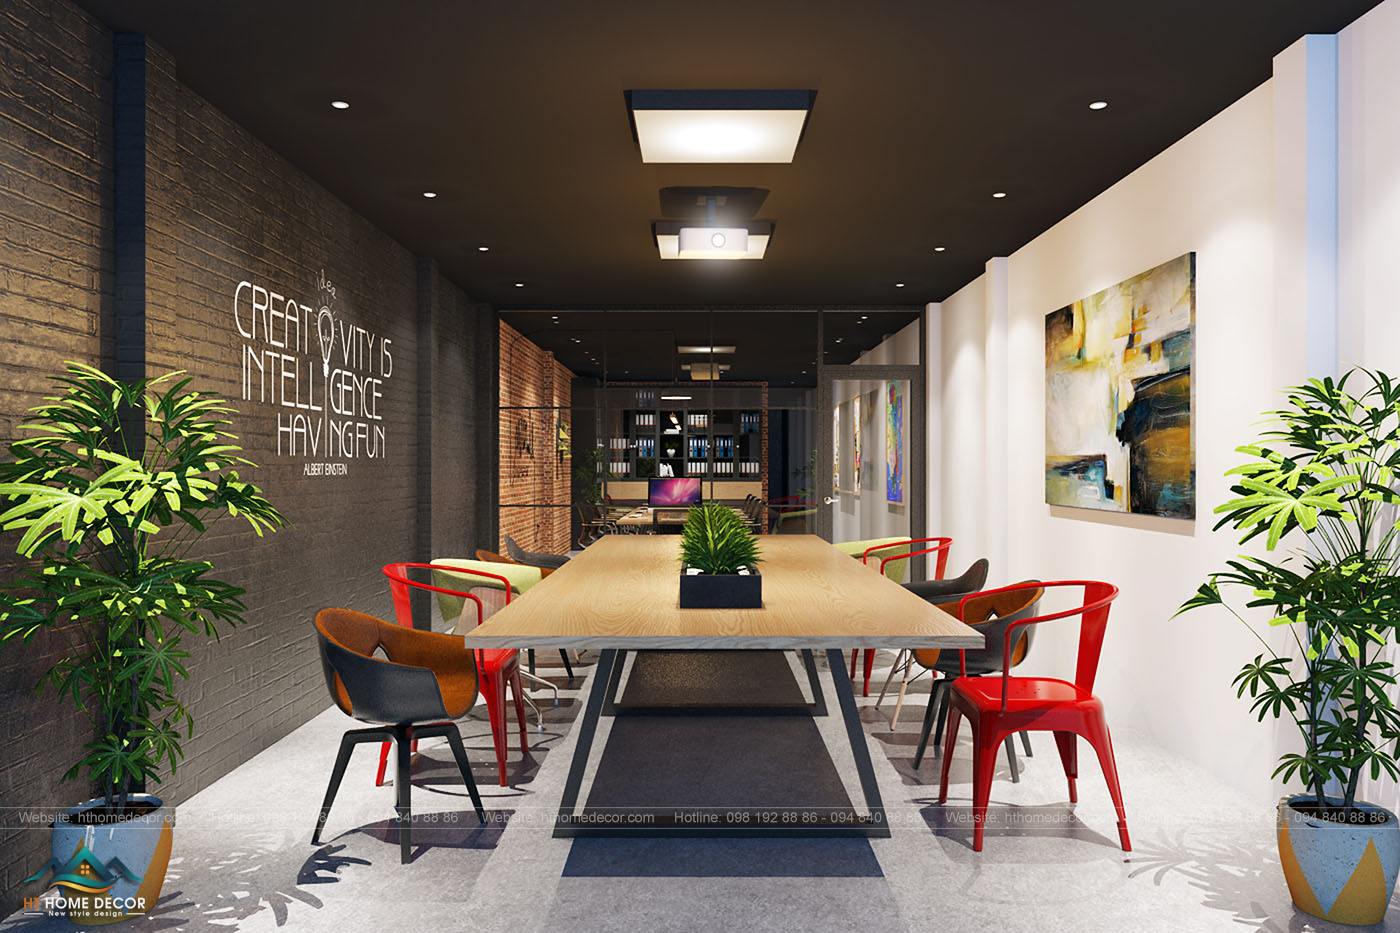 Văn phòng gồm một gian làm việc chung cho các thành viên. Một chiếc bàn chung dài và rộng giúp tương tác lẫn nhau tốt hơn. Thiết kế này của văn phòng xóa đi khoảng cách giữa sếp và nhân viên. Thúc đẩy chất lượng của sản phẩm. Tranh lớn với các màu sắc bắt mắt được dùng để trang trí tường.